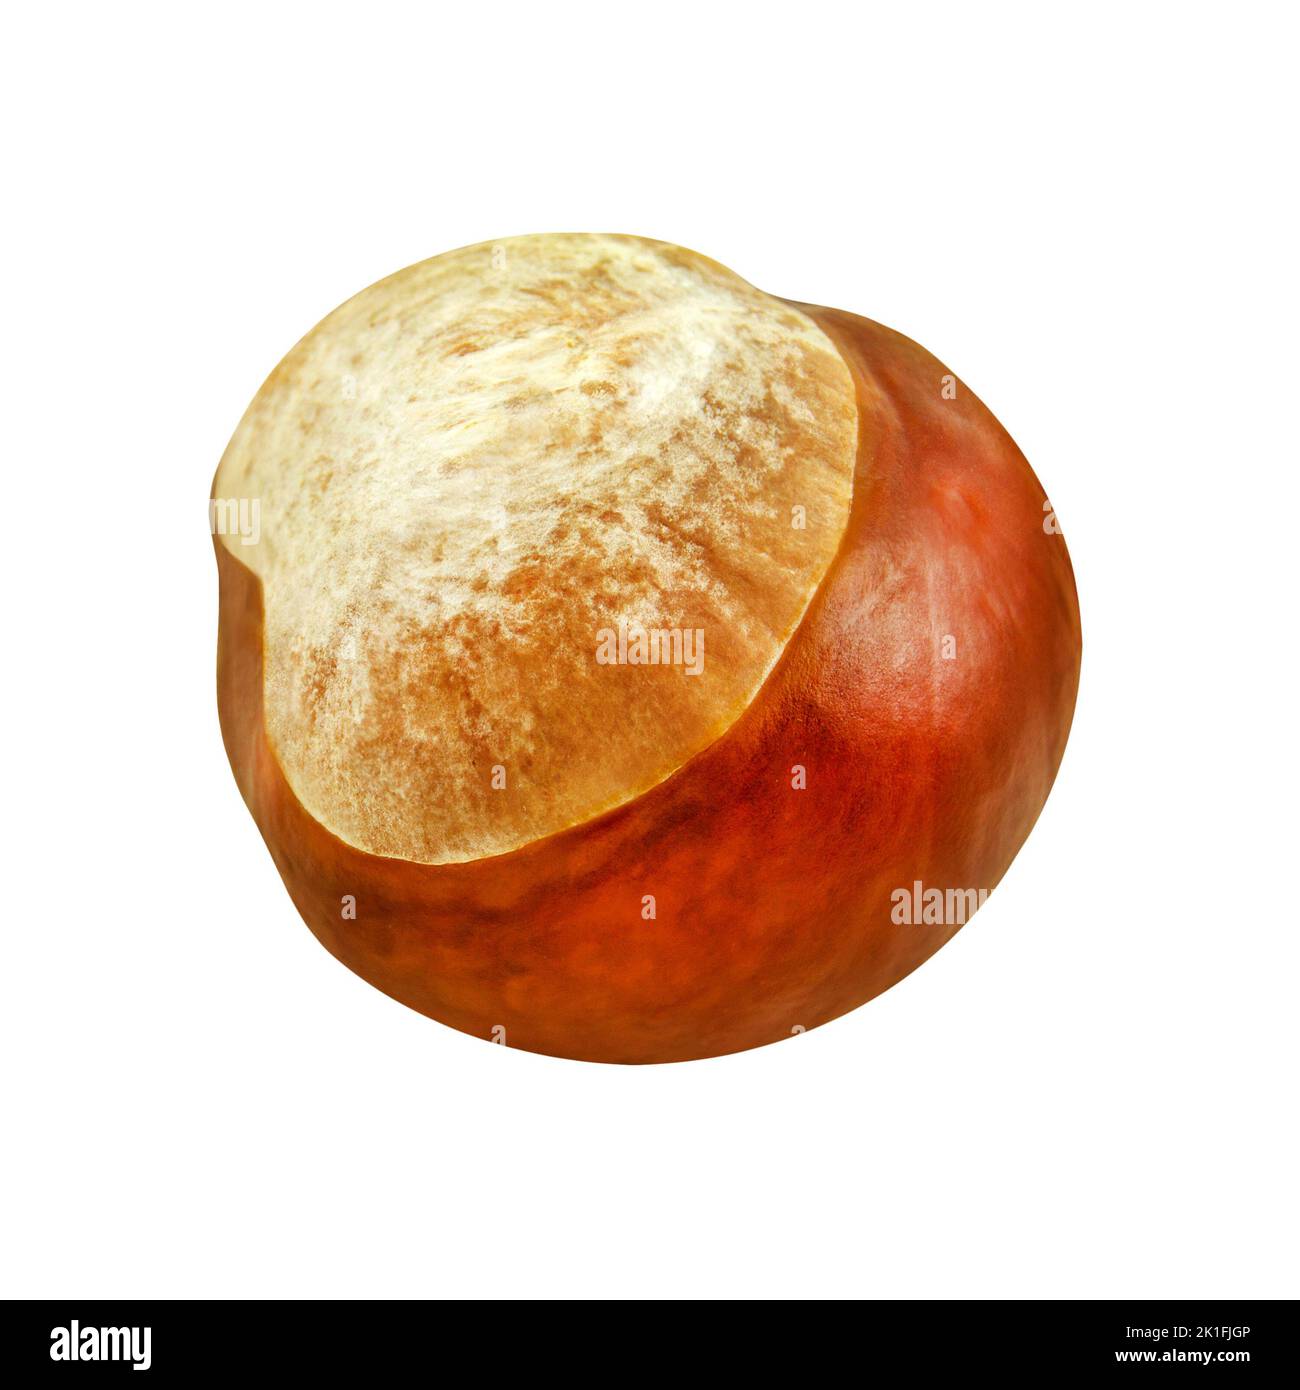 1 Chestnut on isolated on white background Stock Photo